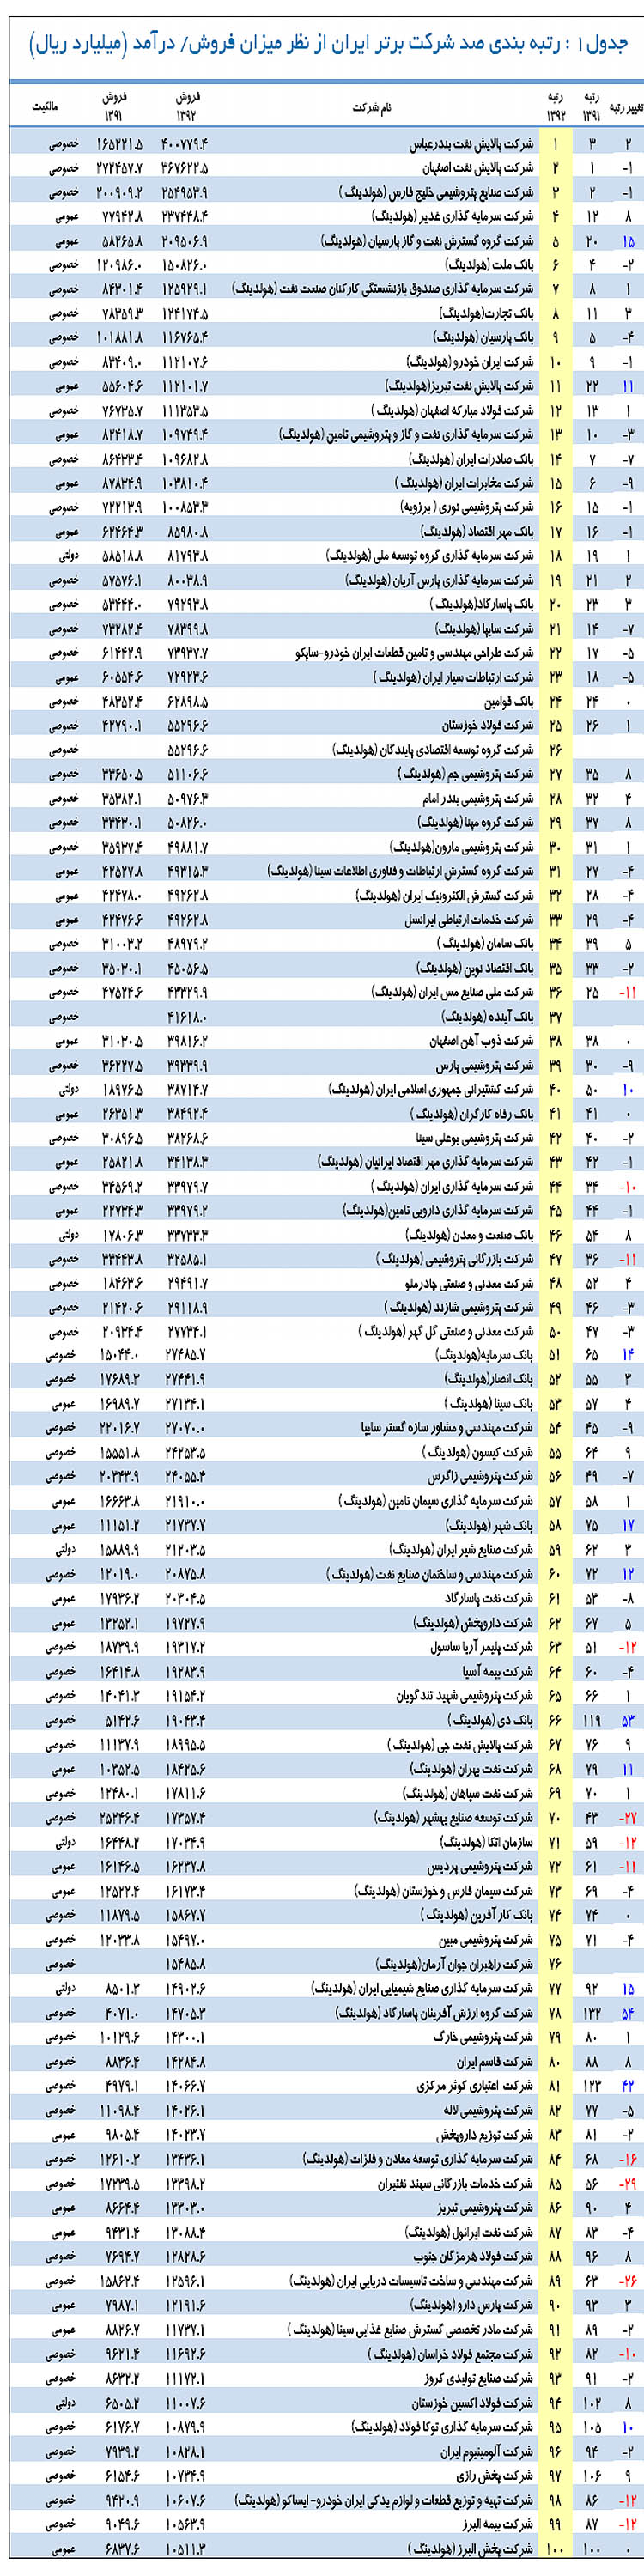 500 غول اقتصاد ایران